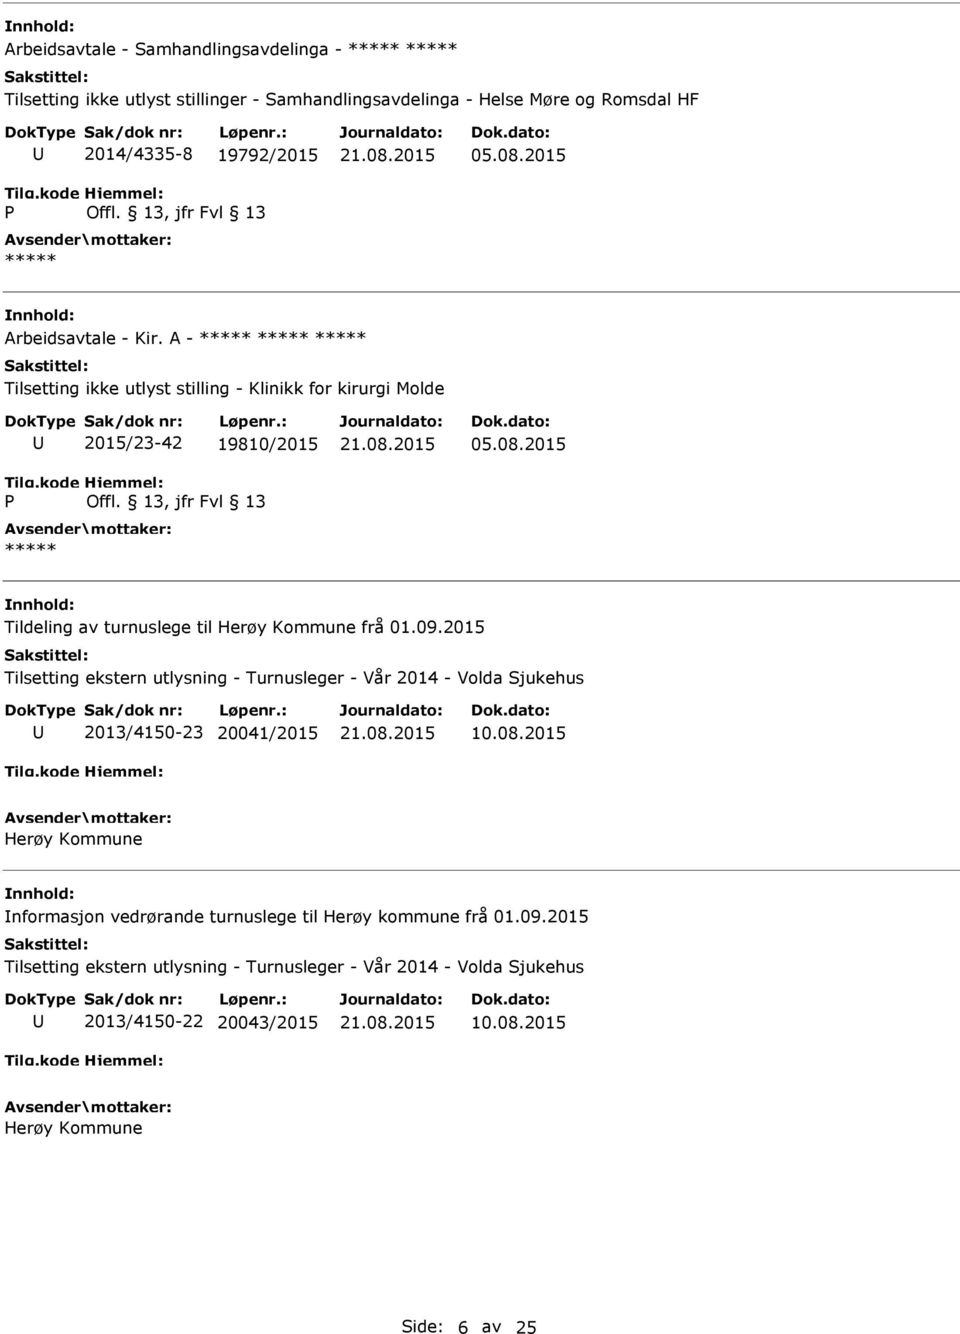 2015 Tildeling av turnuslege til Herøy Kommune frå 01.09.2015 Tilsetting ekstern utlysning - Turnusleger - Vår 2014 - Volda Sjukehus 2013/4150-23 20041/2015 10.08.